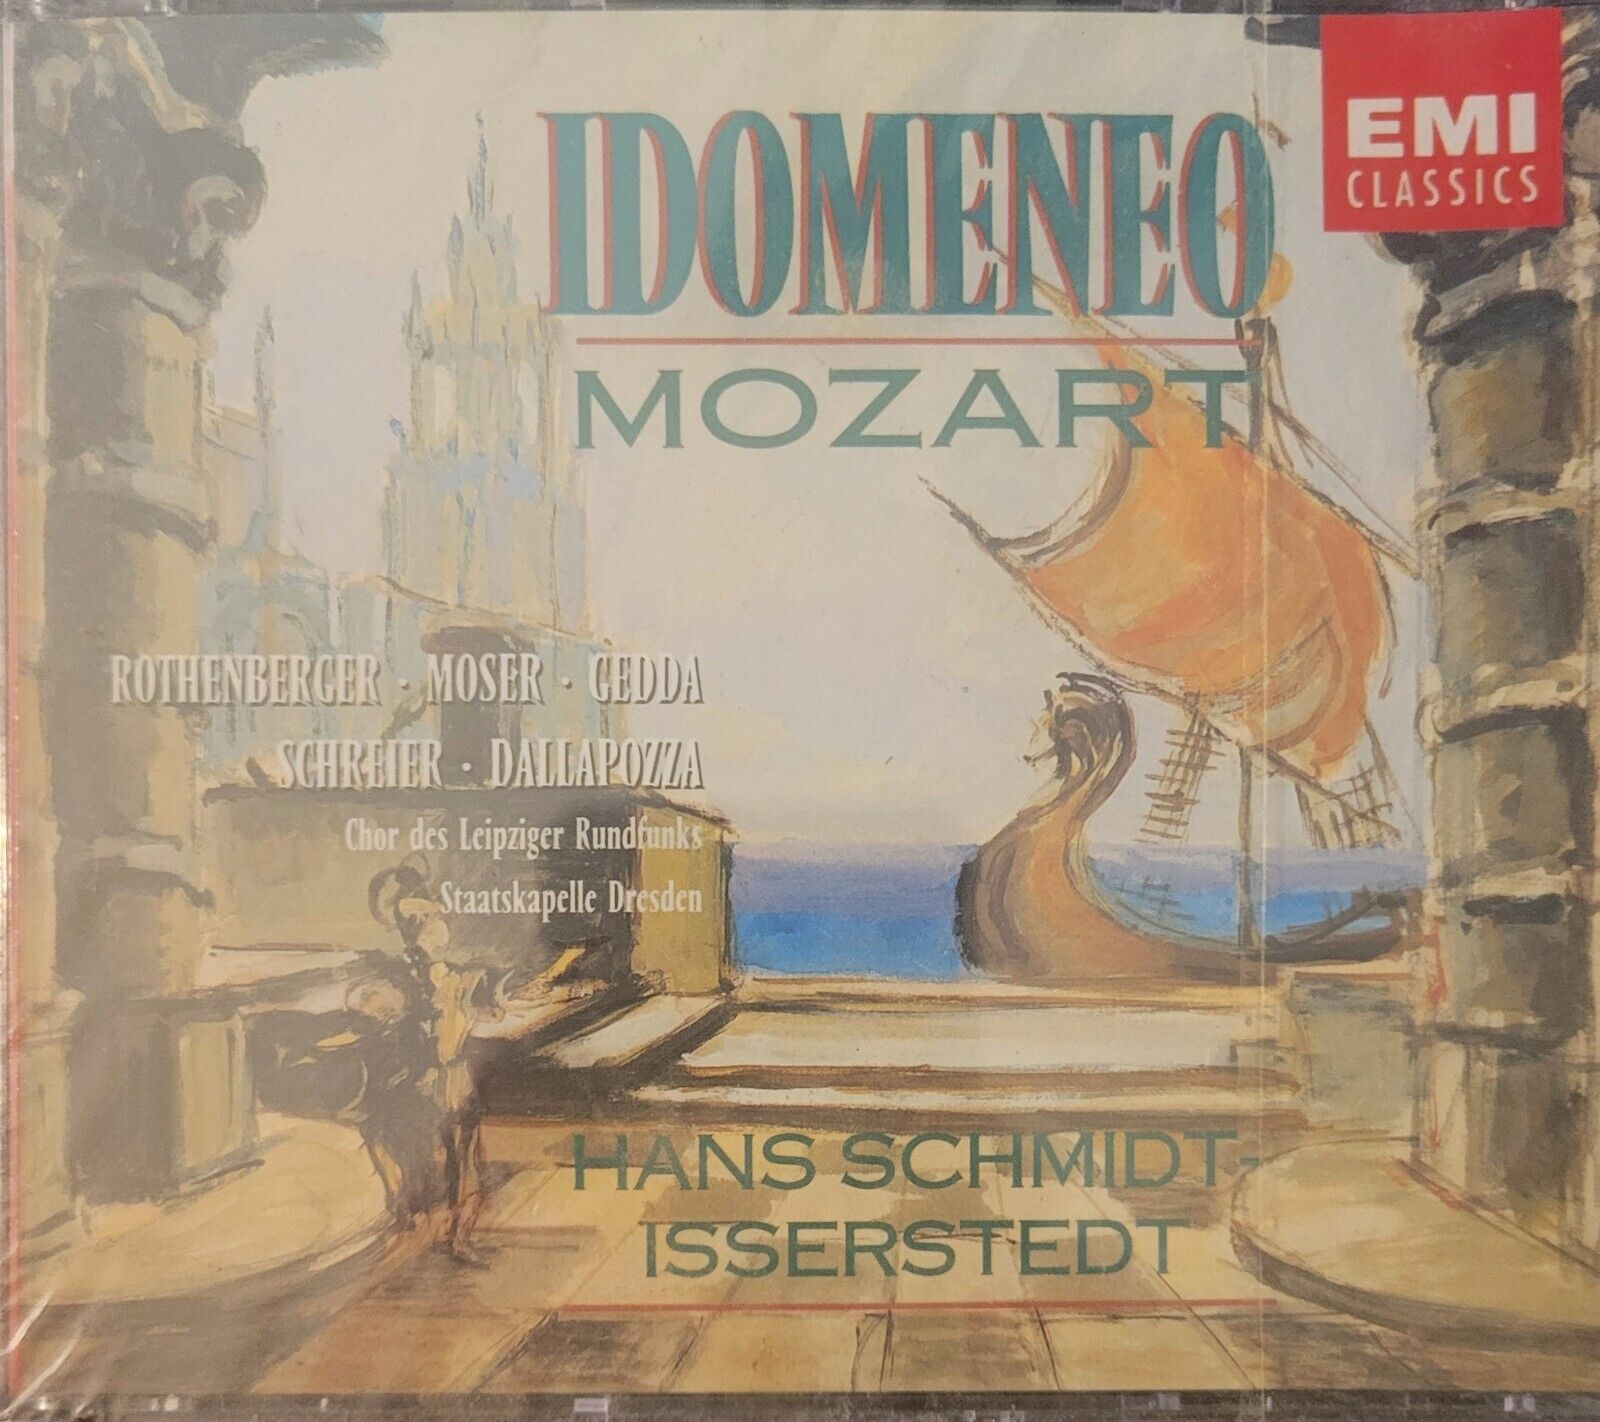 Mozart Idomeneo 3-CDs 1991 EMI Hans Schmidt Isserstedt Rothenberger Moser Gedda